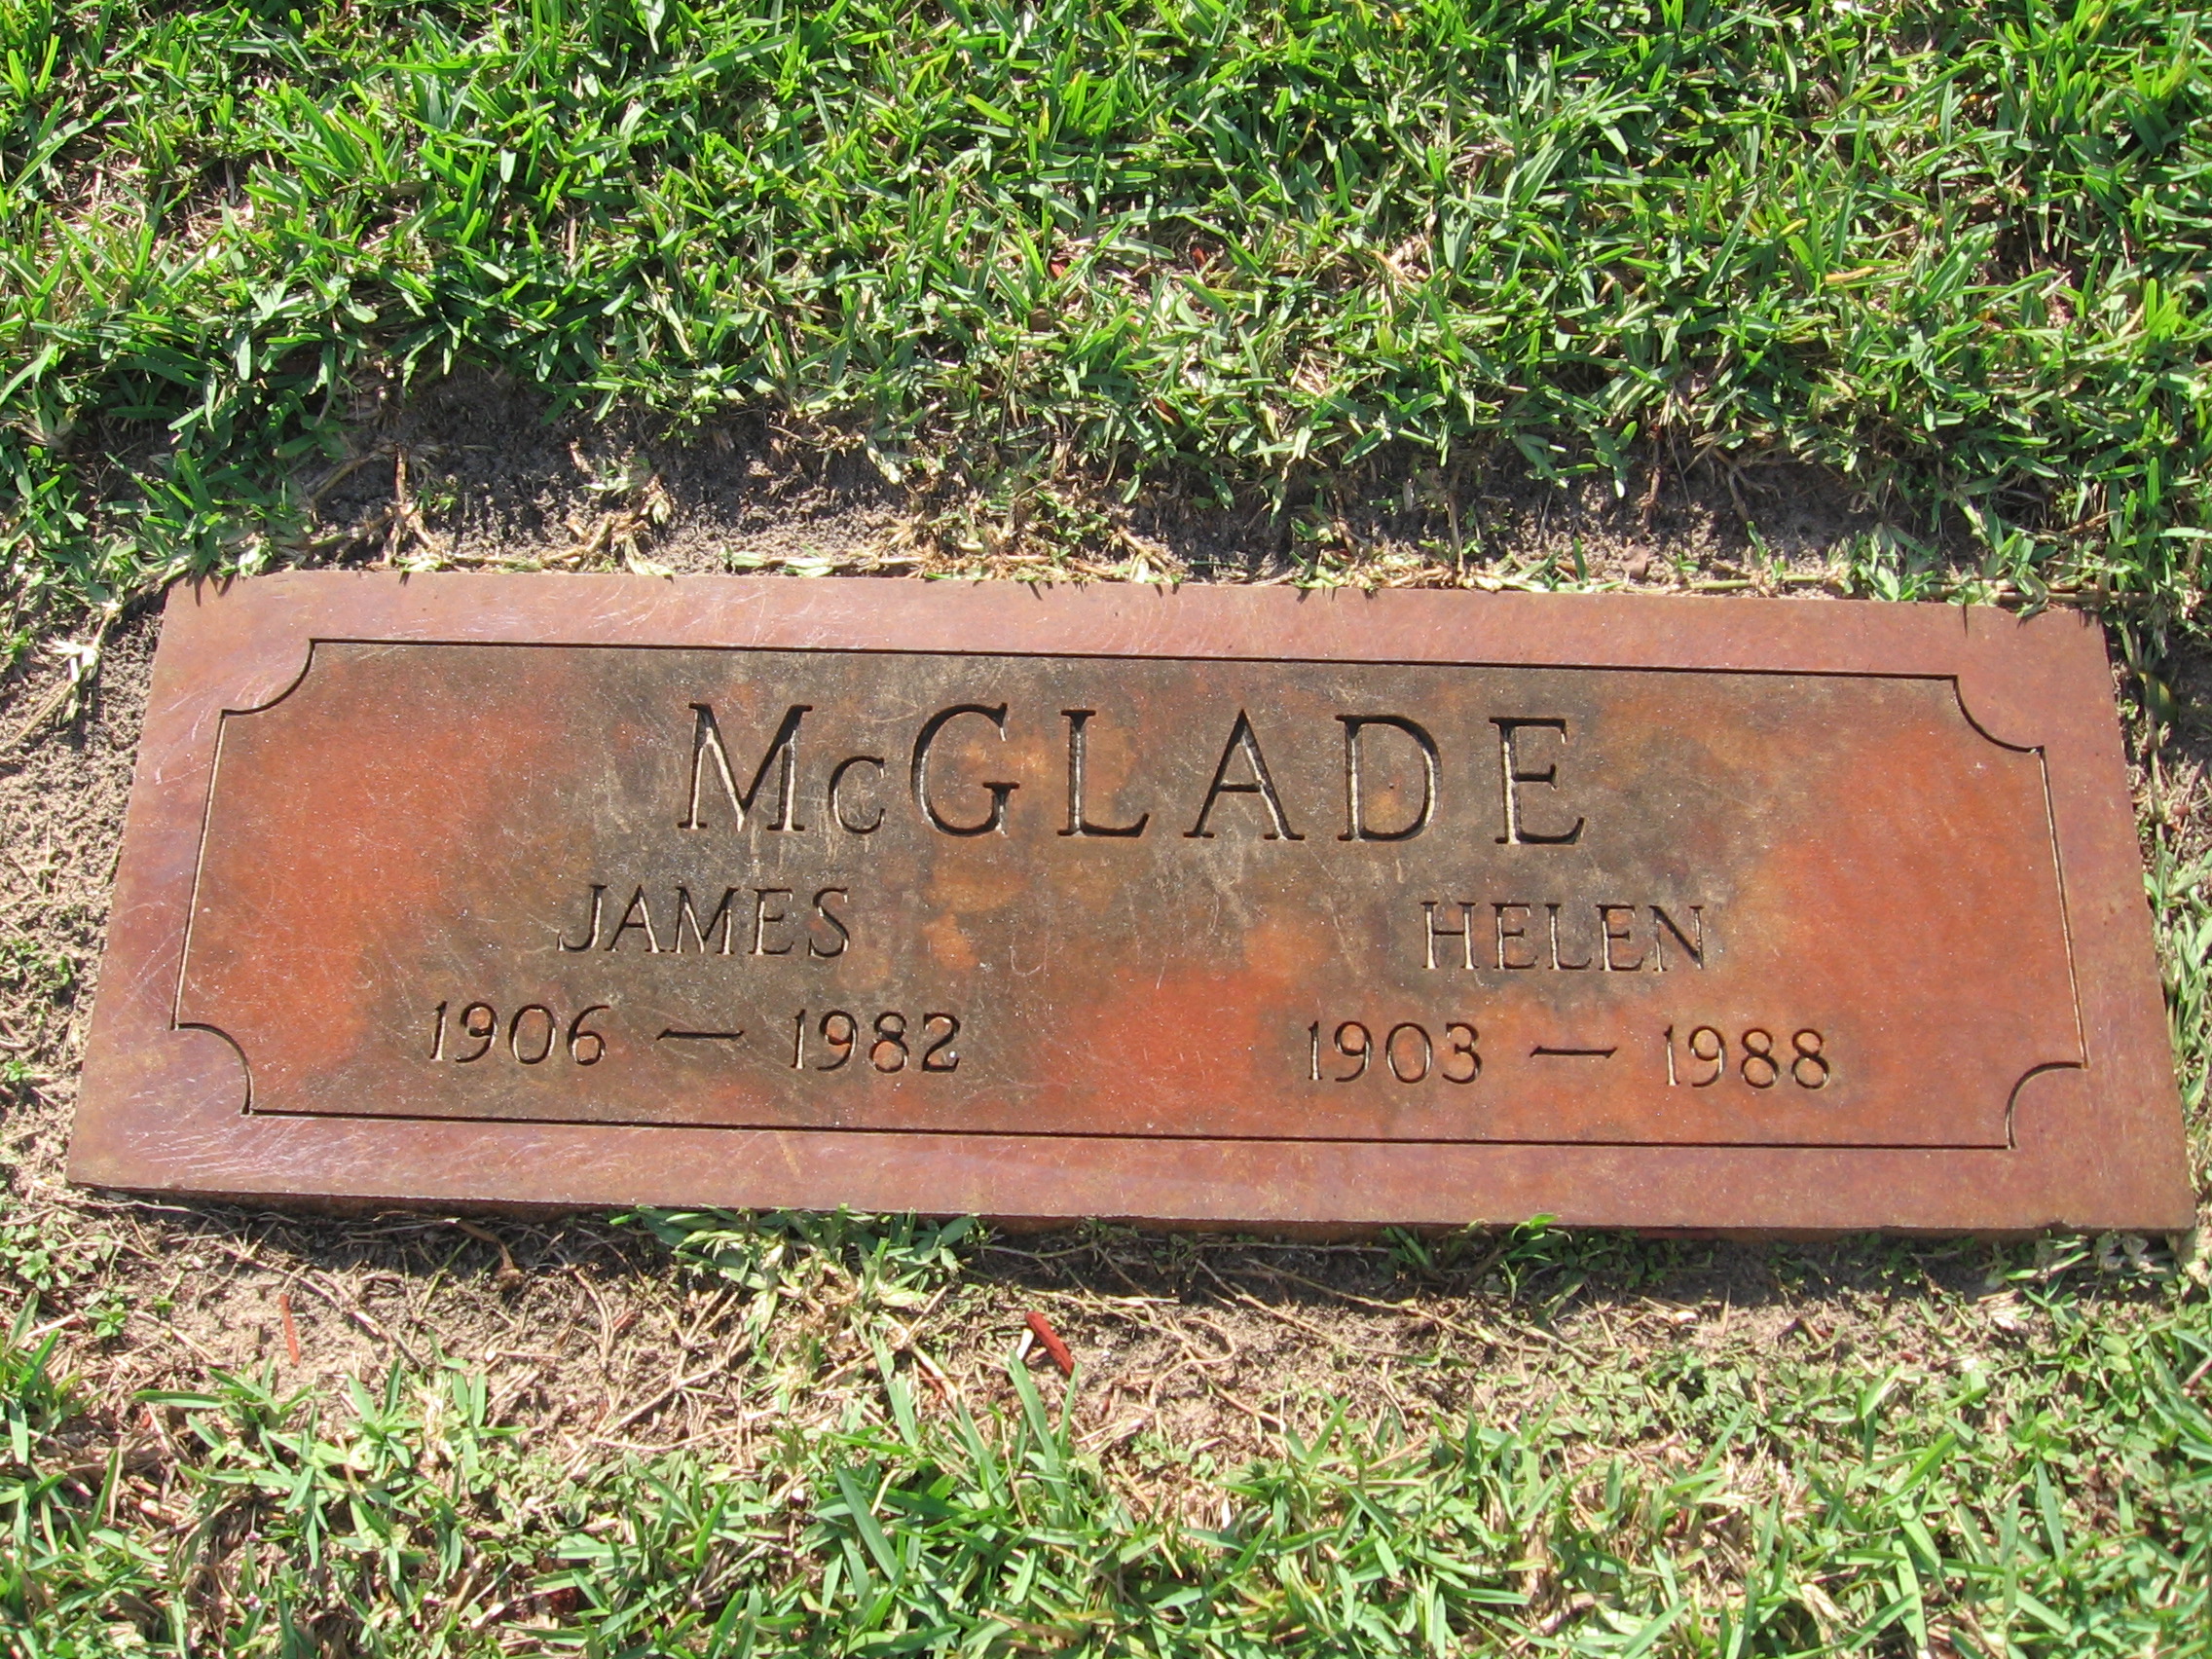 James McGlade